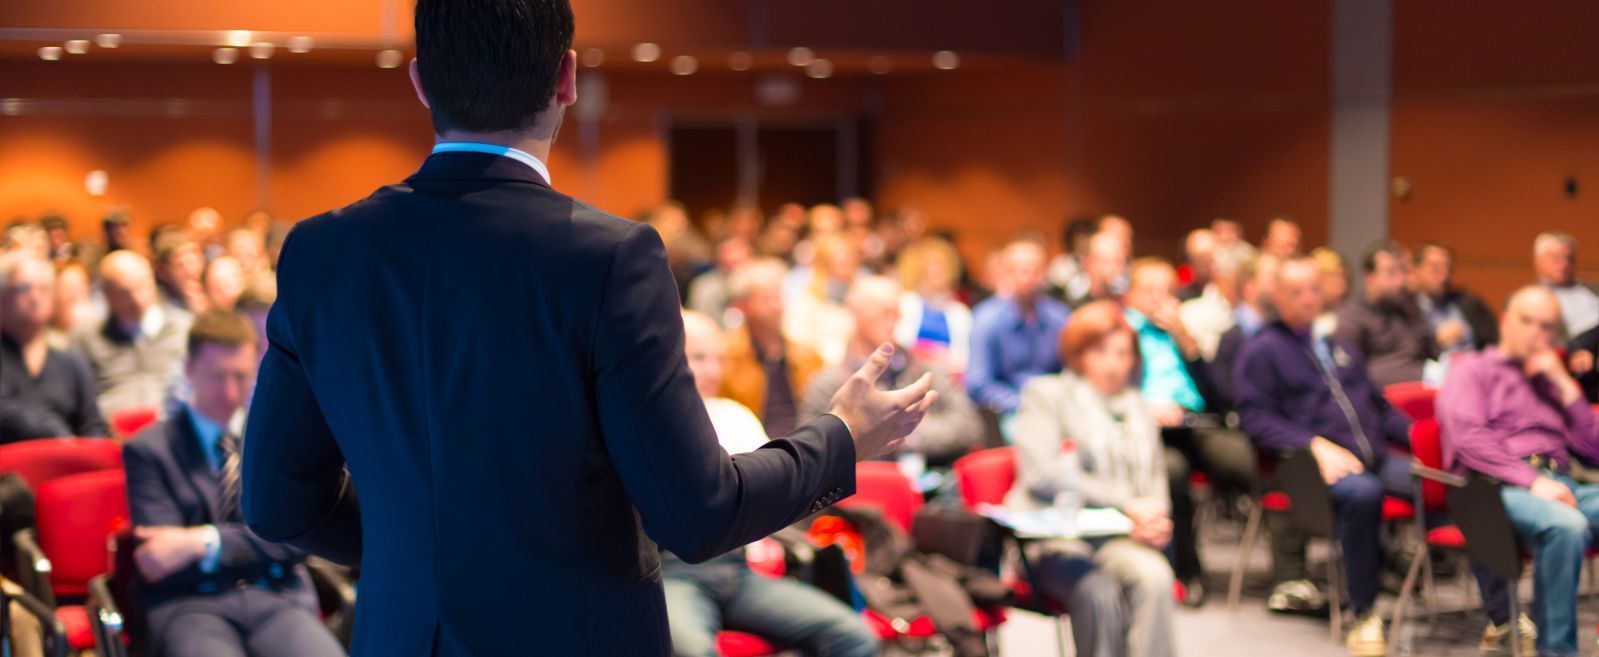 Un hombre está dando una presentación ante un gran grupo de personas en una sala de conferencias.